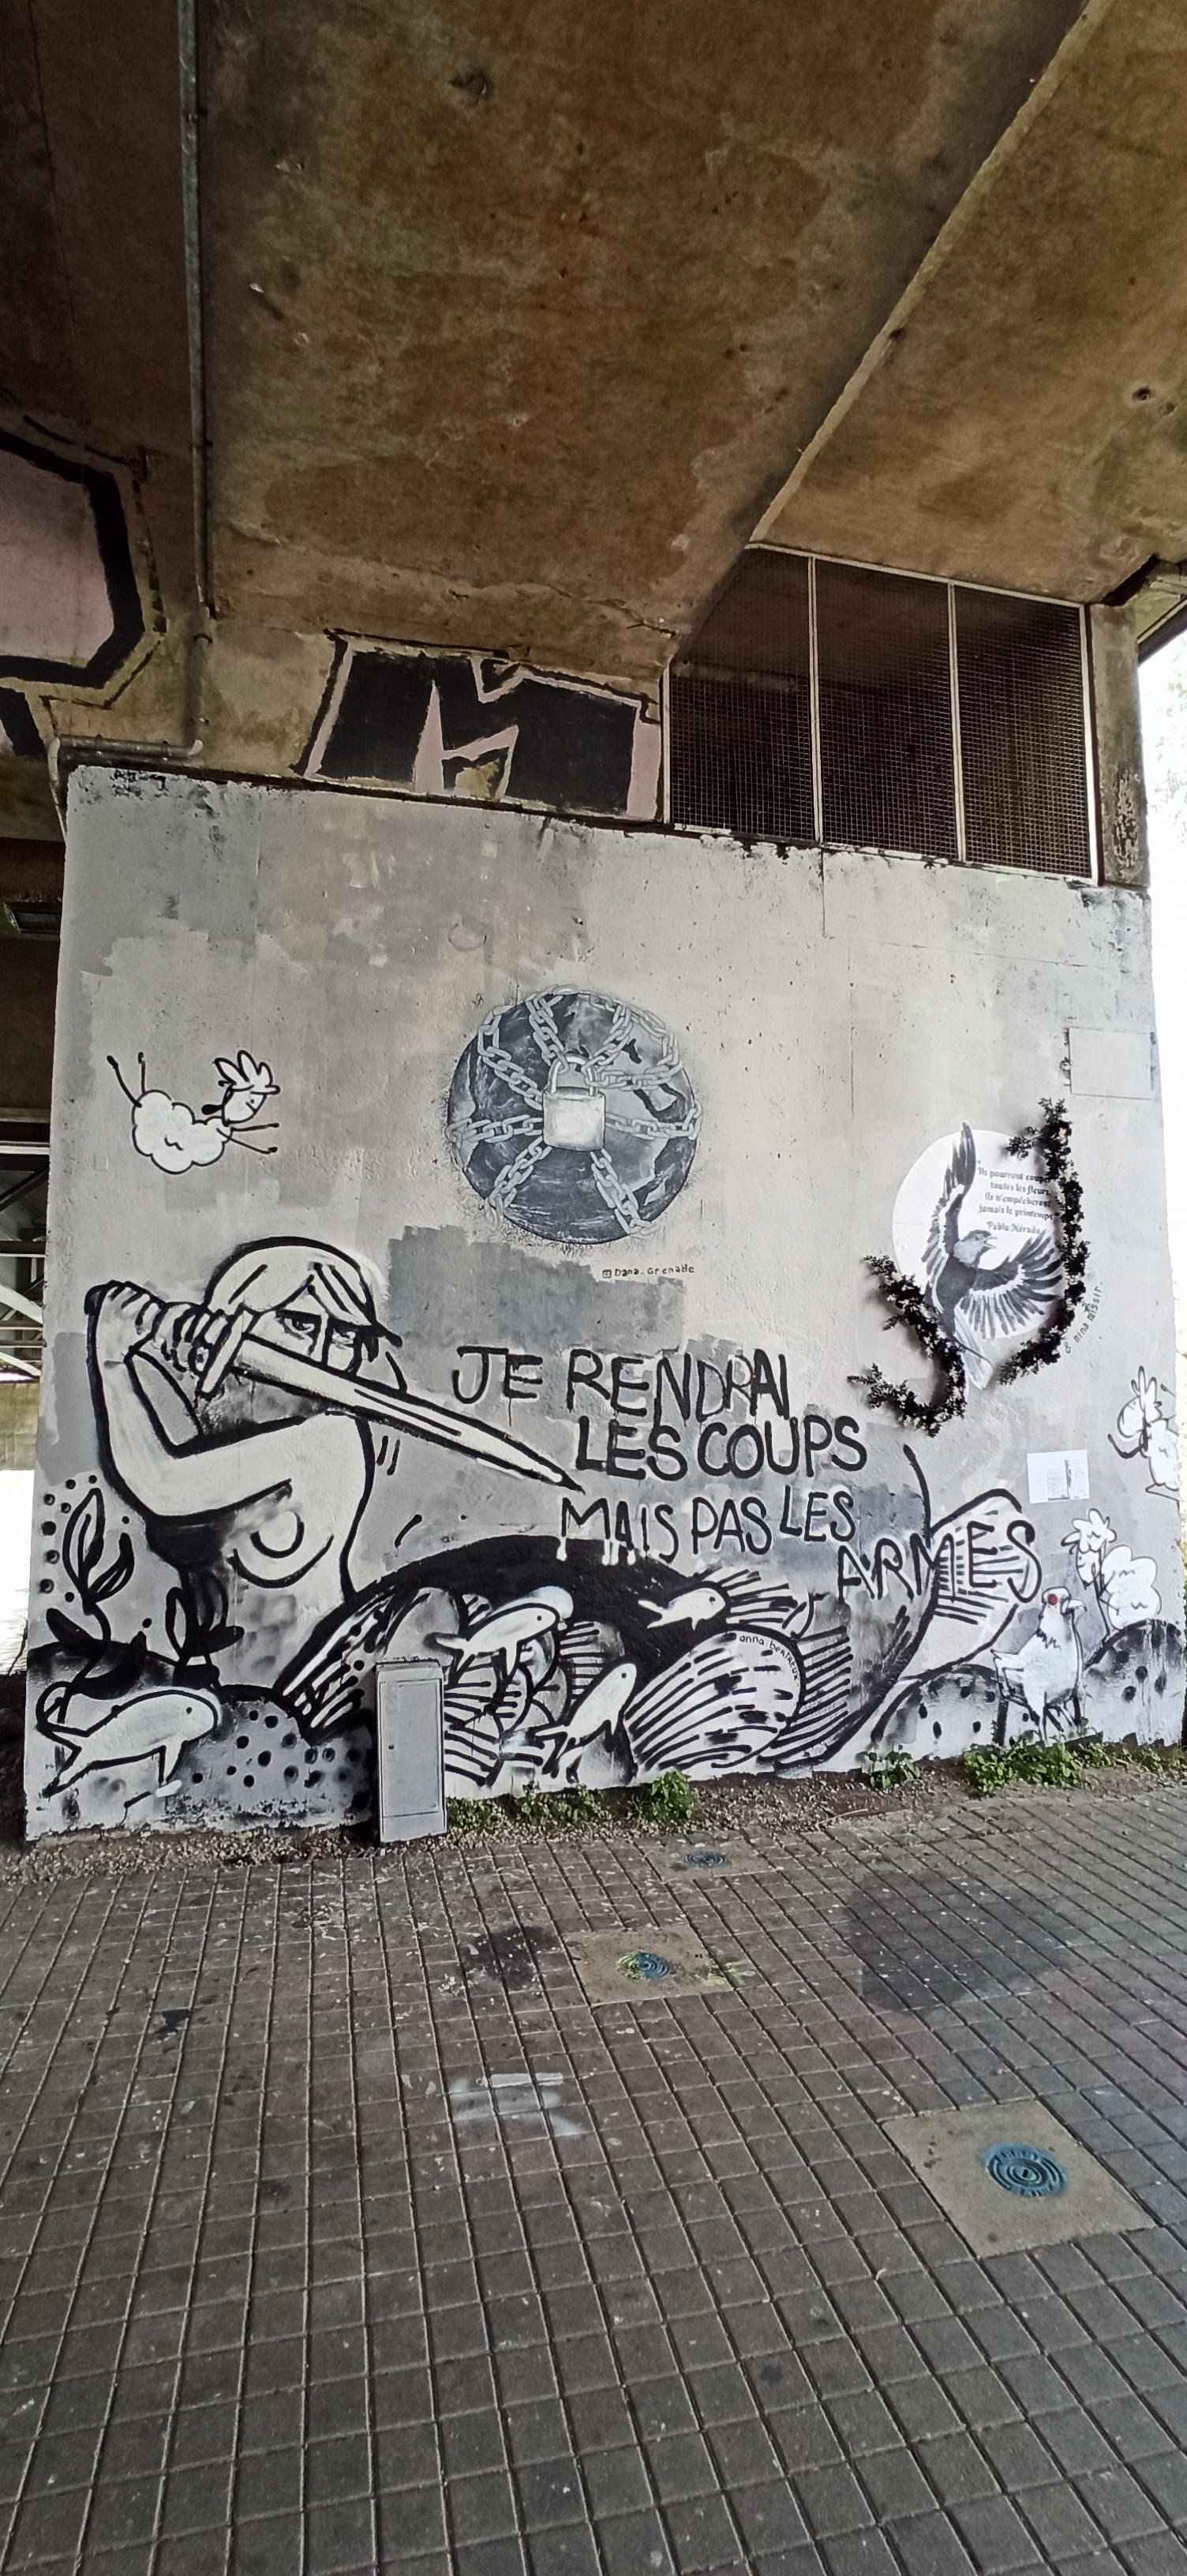 Graffiti 5046 Je rendrai les coups mais pas les armes captured by Rabot in Nantes France